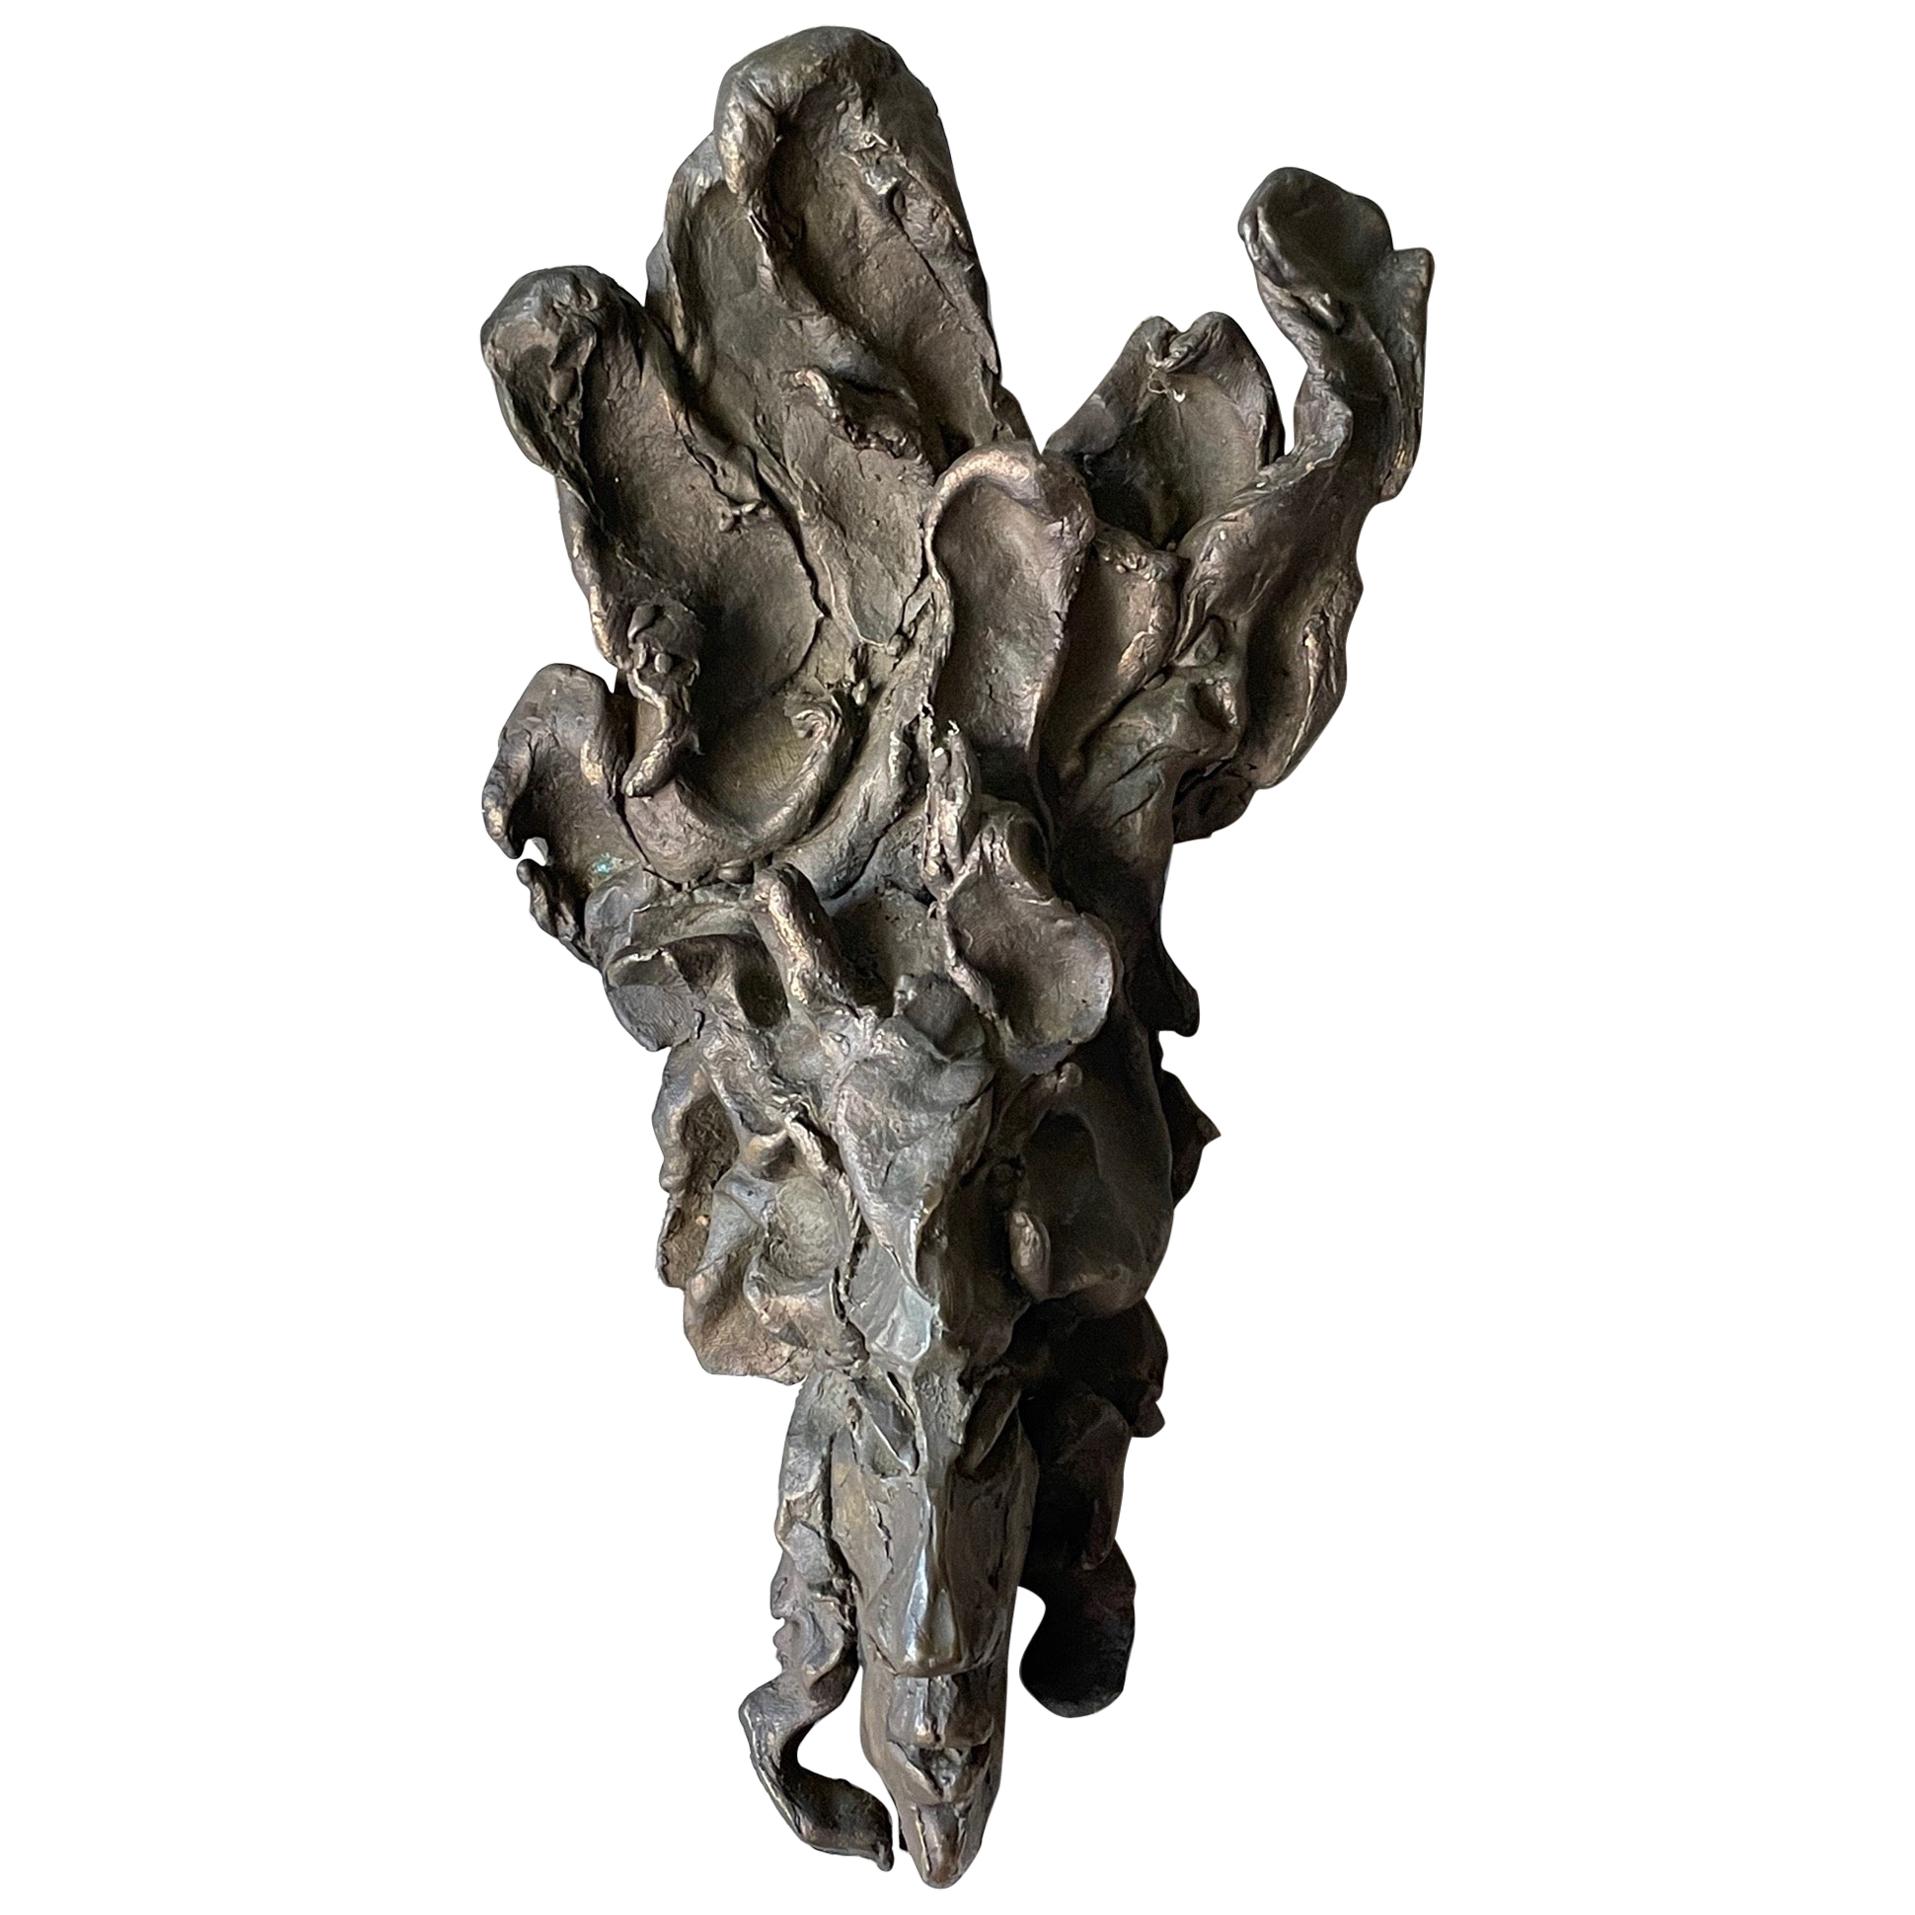 Jerry Meatyard Bronzeskulptur „Hydra“ aus Bronze